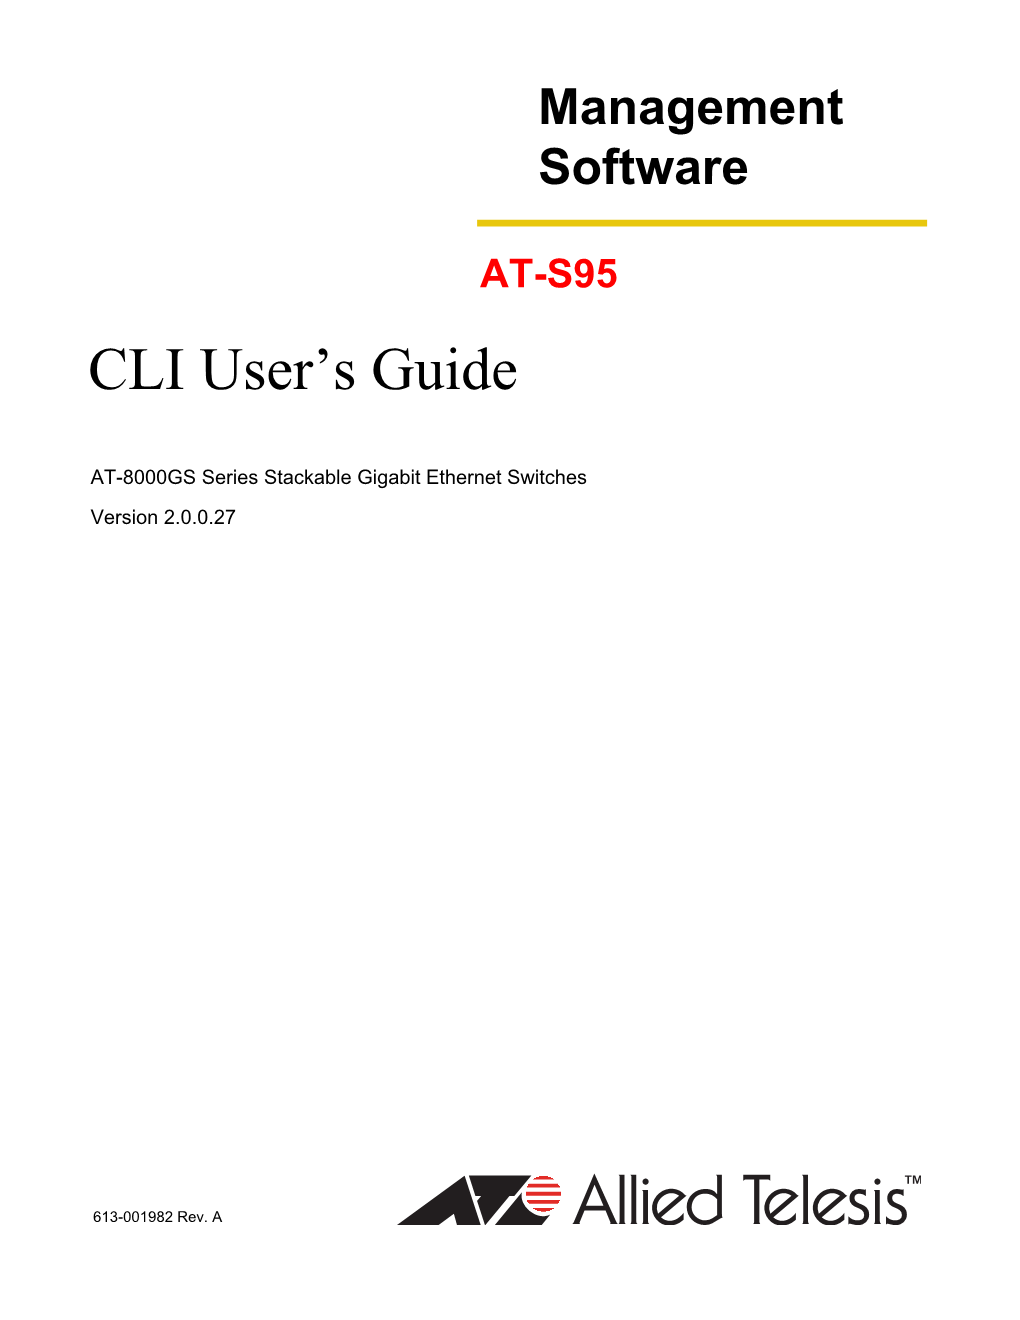 CLI User's Guide